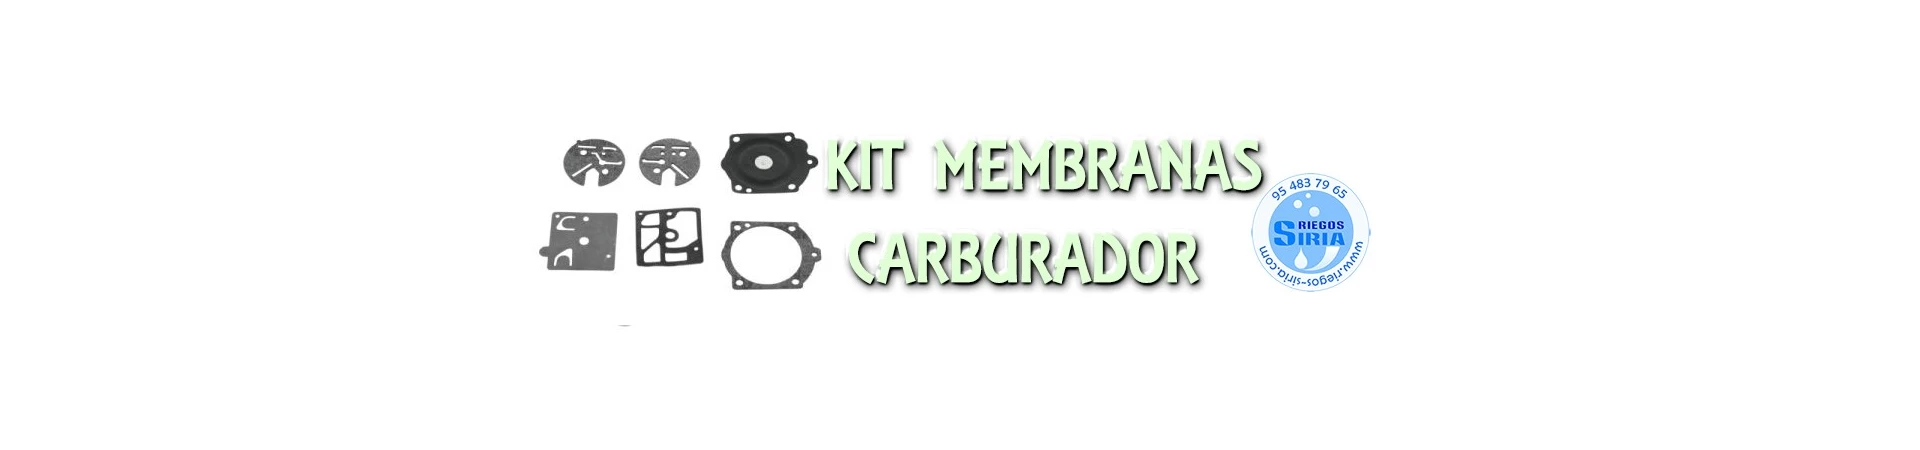 KIT de MEMBRANAS de CARBURADORES para Motosierras y Desbrozadoras